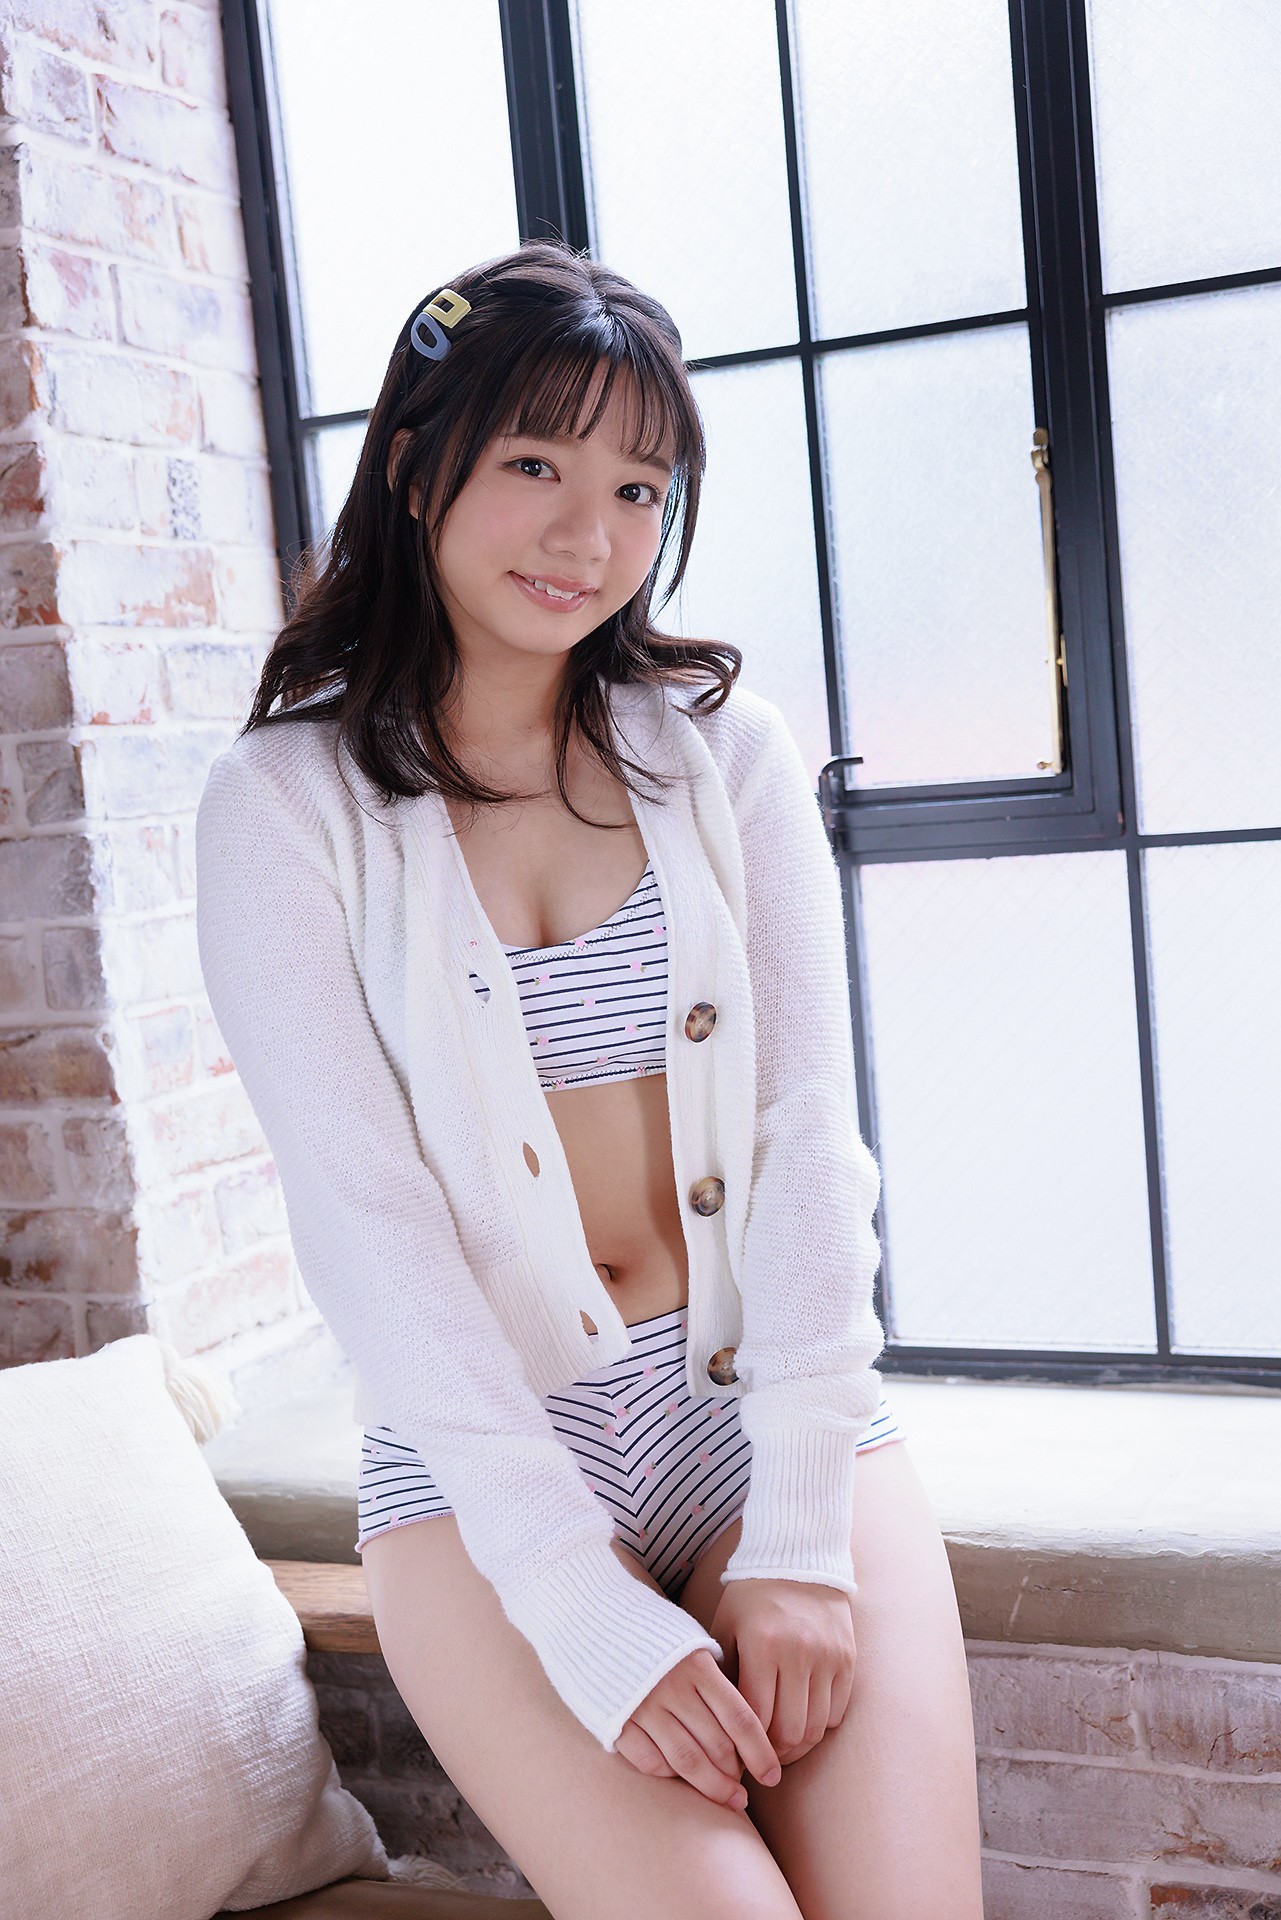 Hinano Yuki Minisuka Tv Regular Gallery Share Erotic Asian Girl Picture